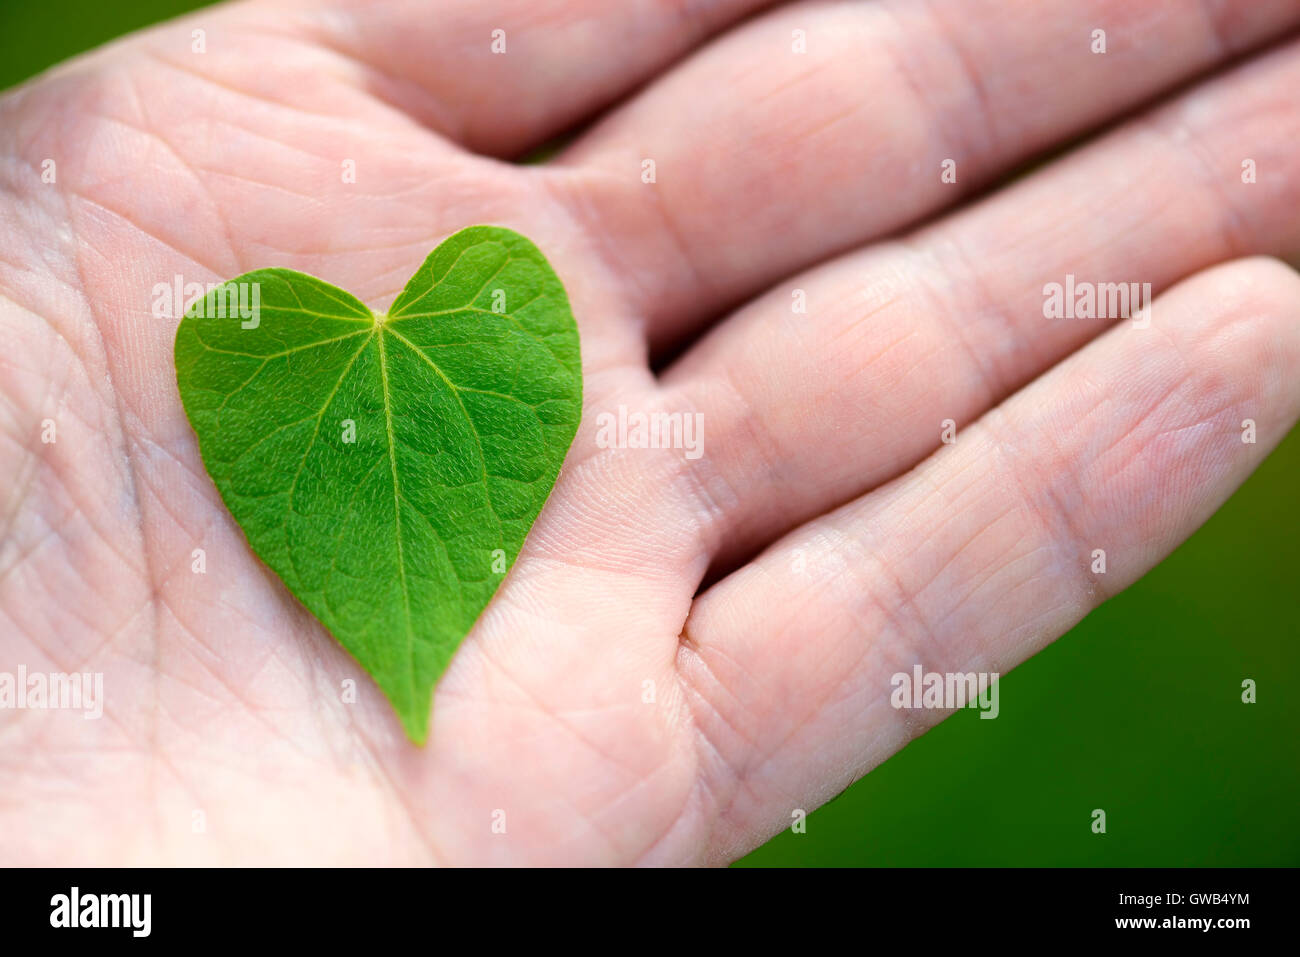 Hojas en forma de corazón en una mano, Herzfoermiges Blatt auf einer mano Foto de stock